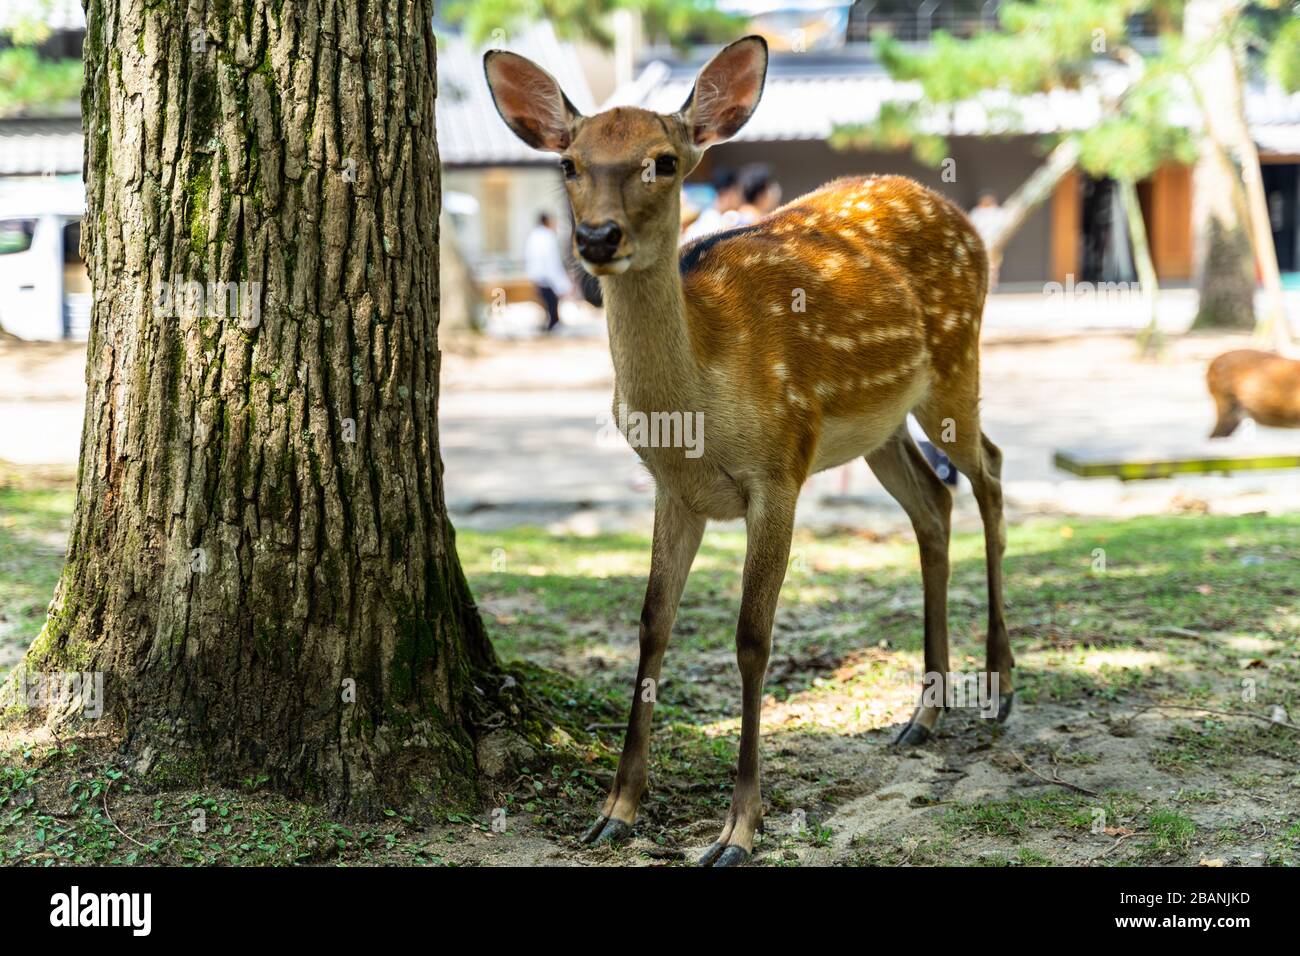 A deer posing in front of camera at Nara Park, Japan Stock Photo